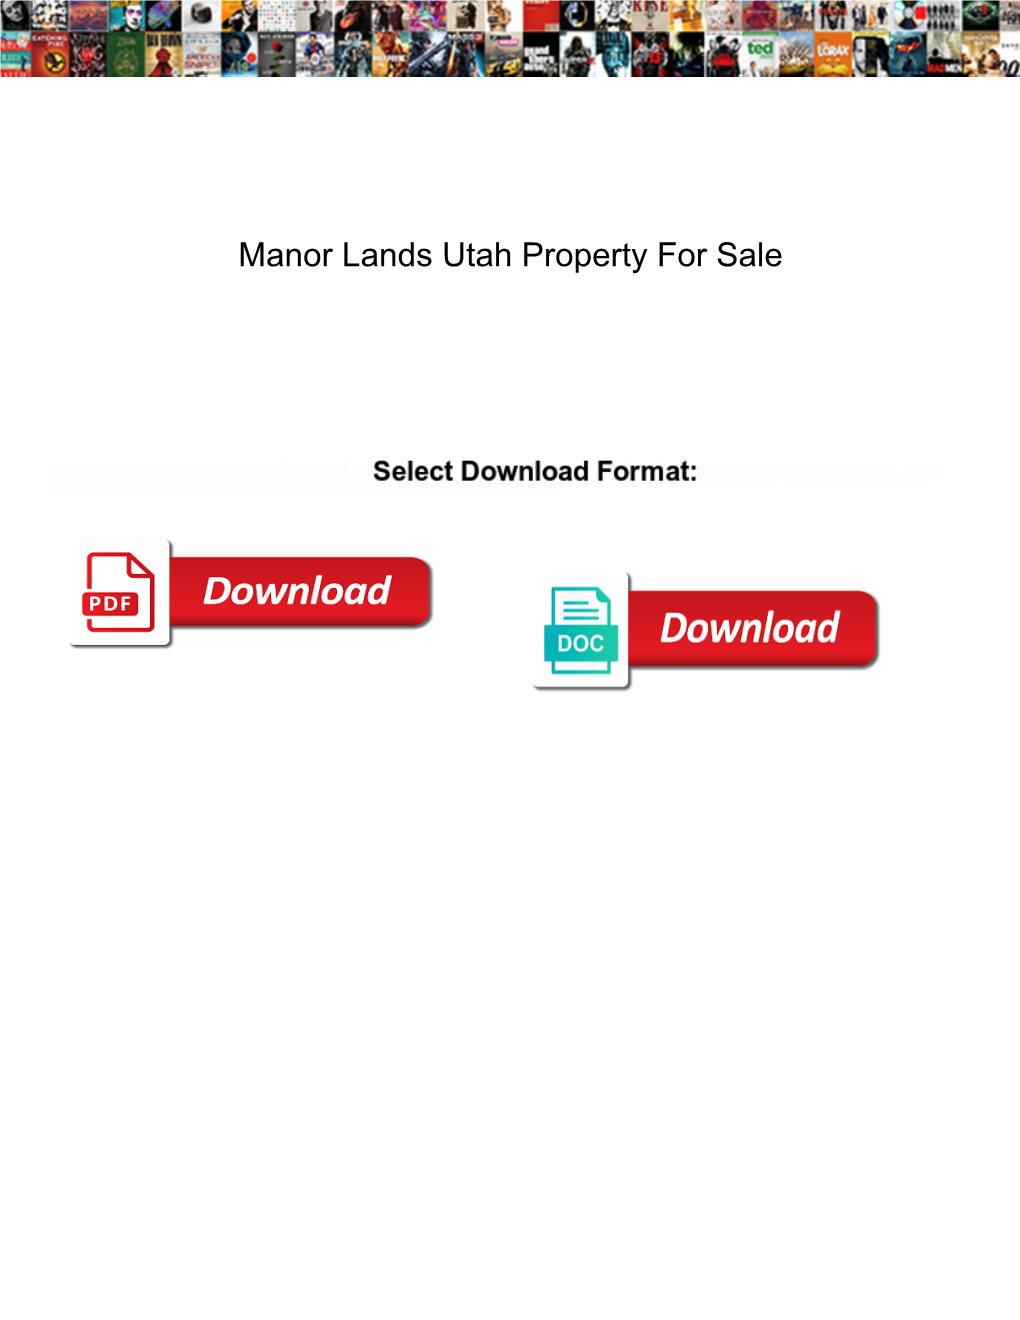 Manor Lands Utah Property for Sale